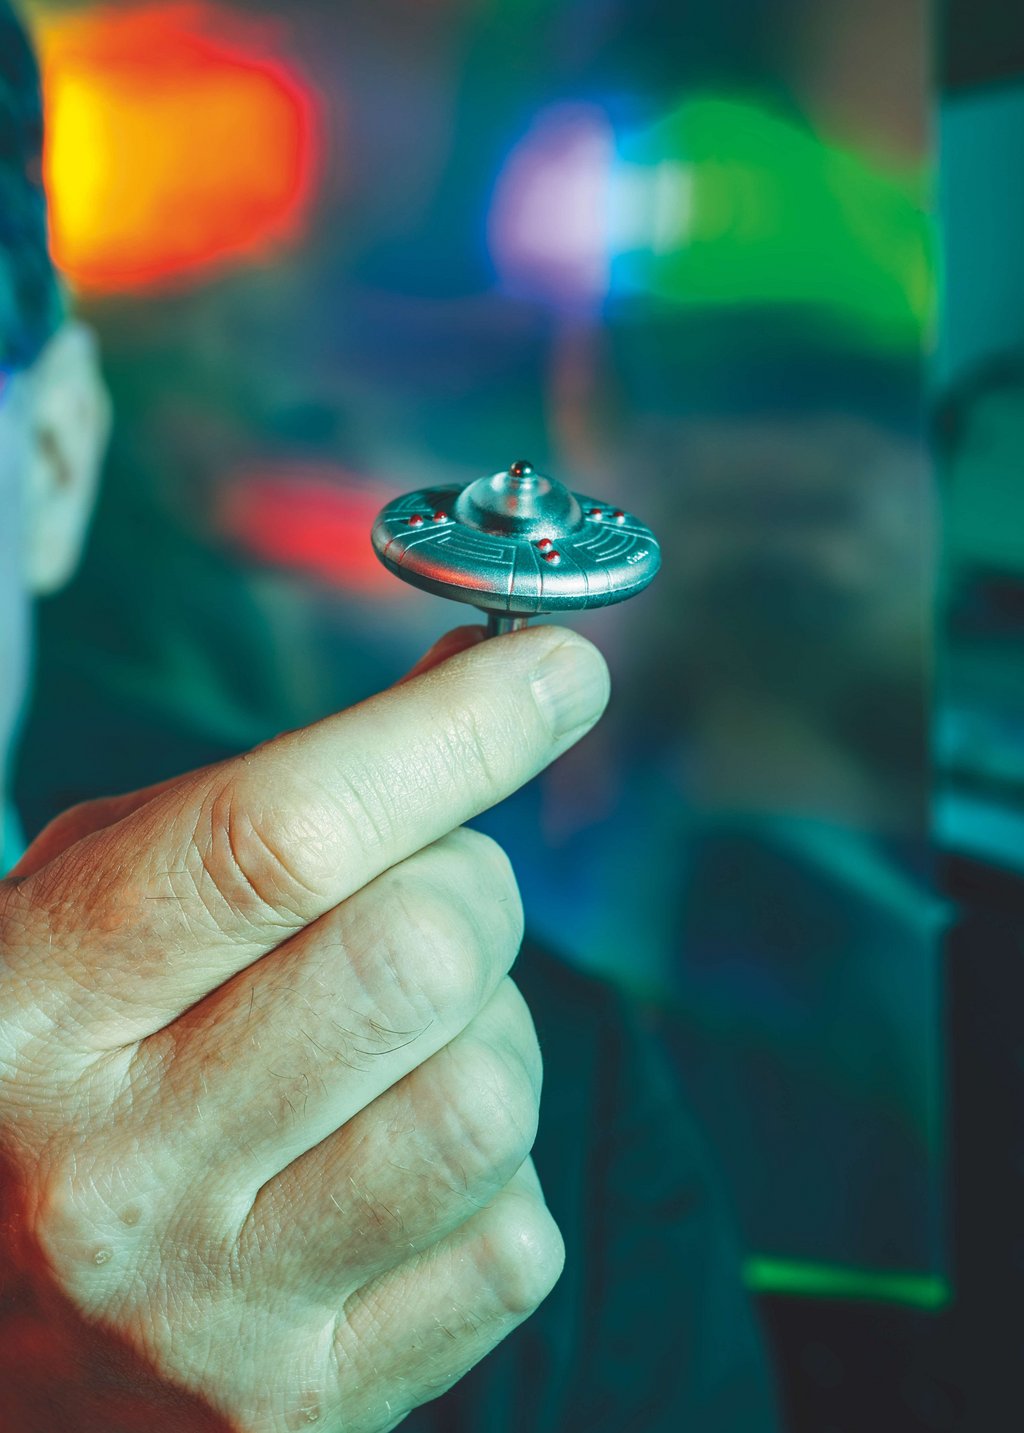 Modell eines kleinen UFOs wird von einer Hand gehalten.